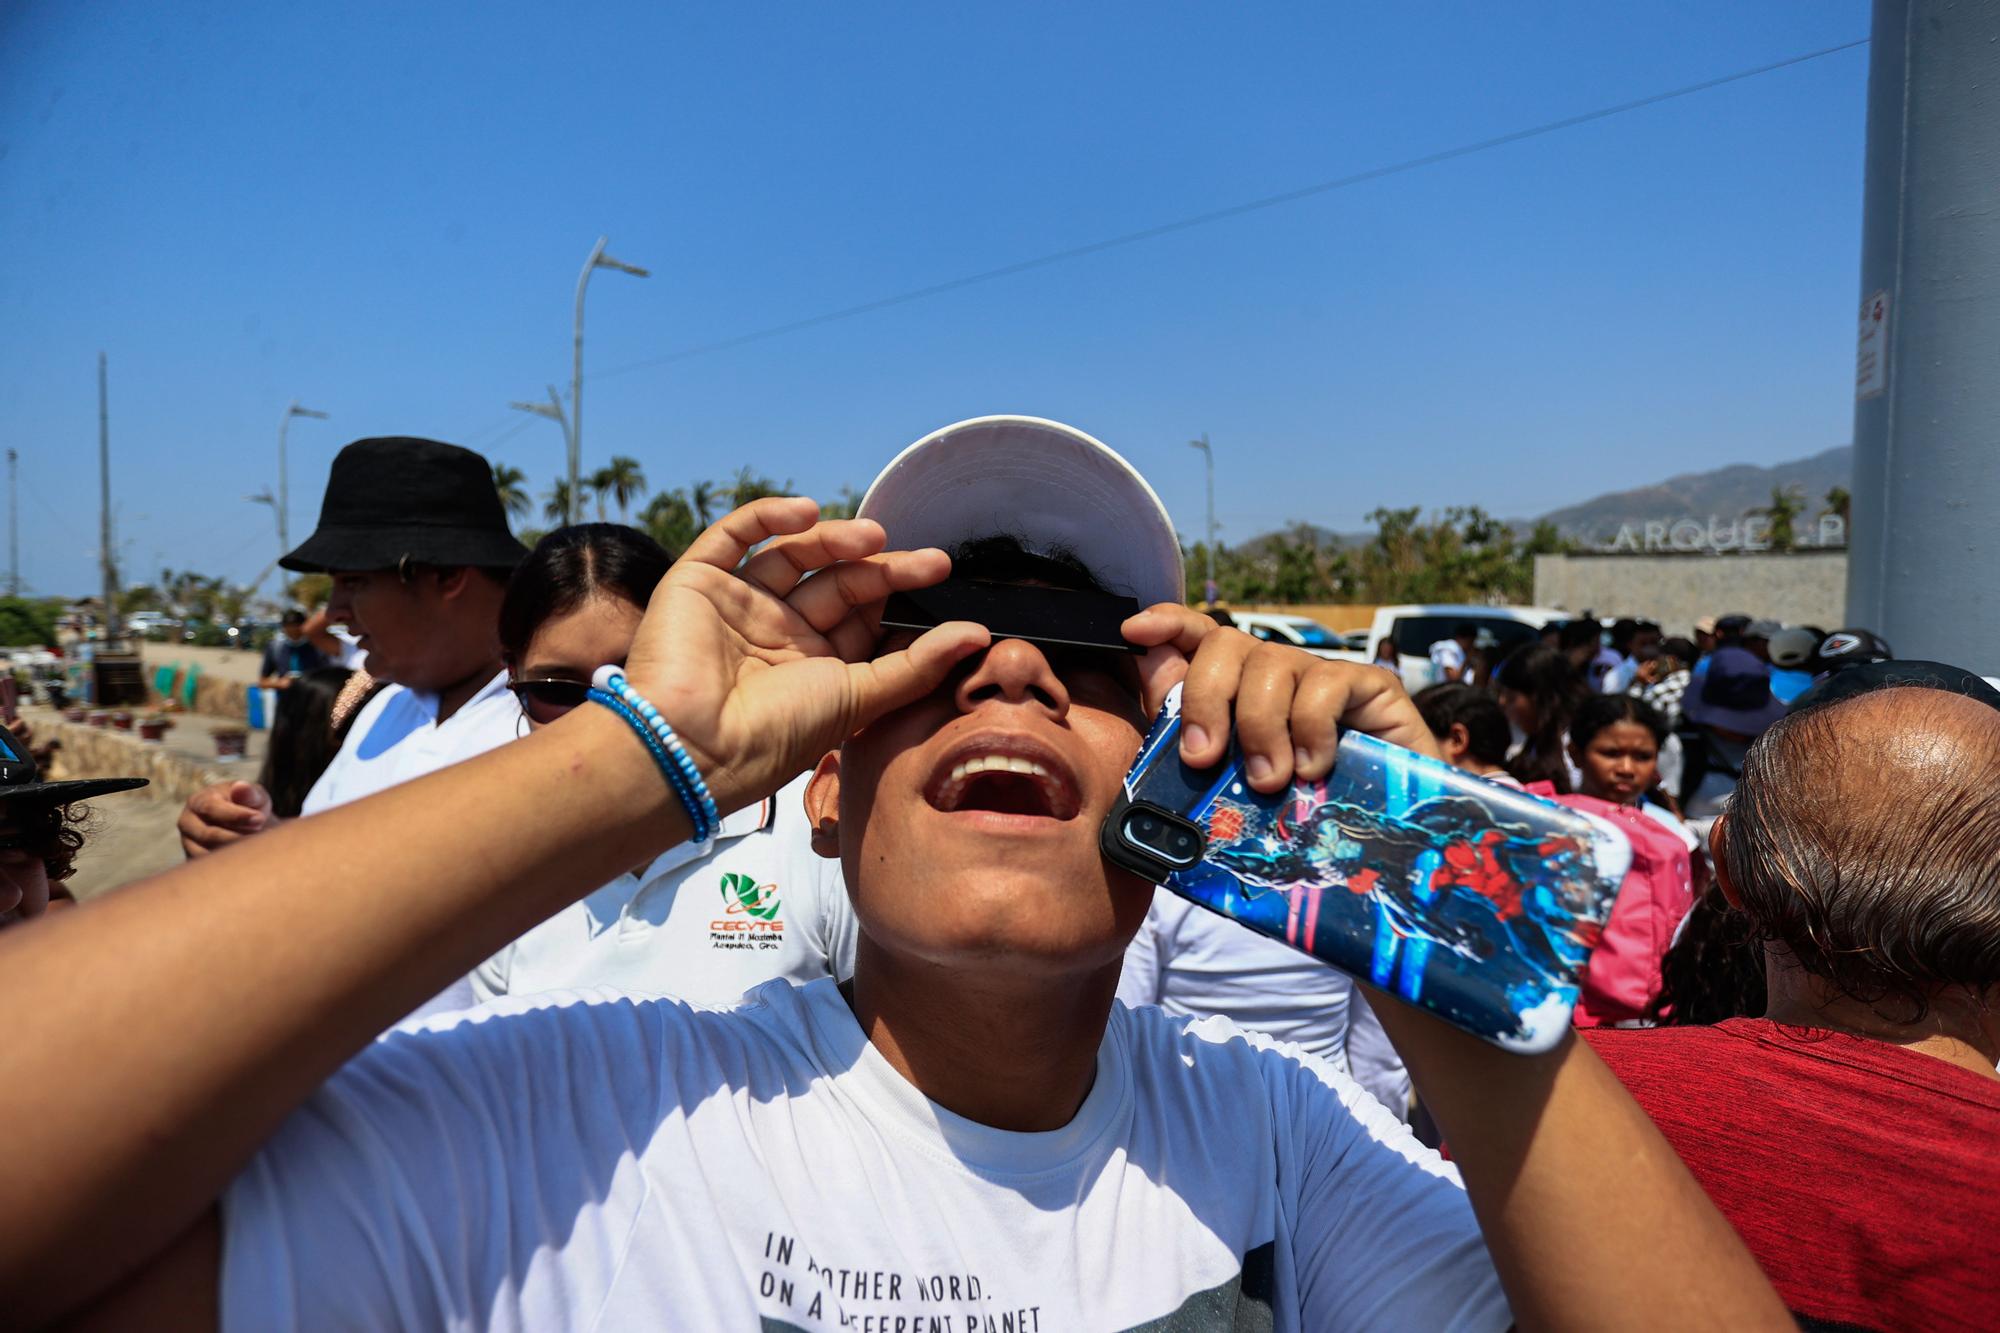 El eclipse total de Norteamérica comienza a apreciarse en la ciudad mexicana de Mazatlán